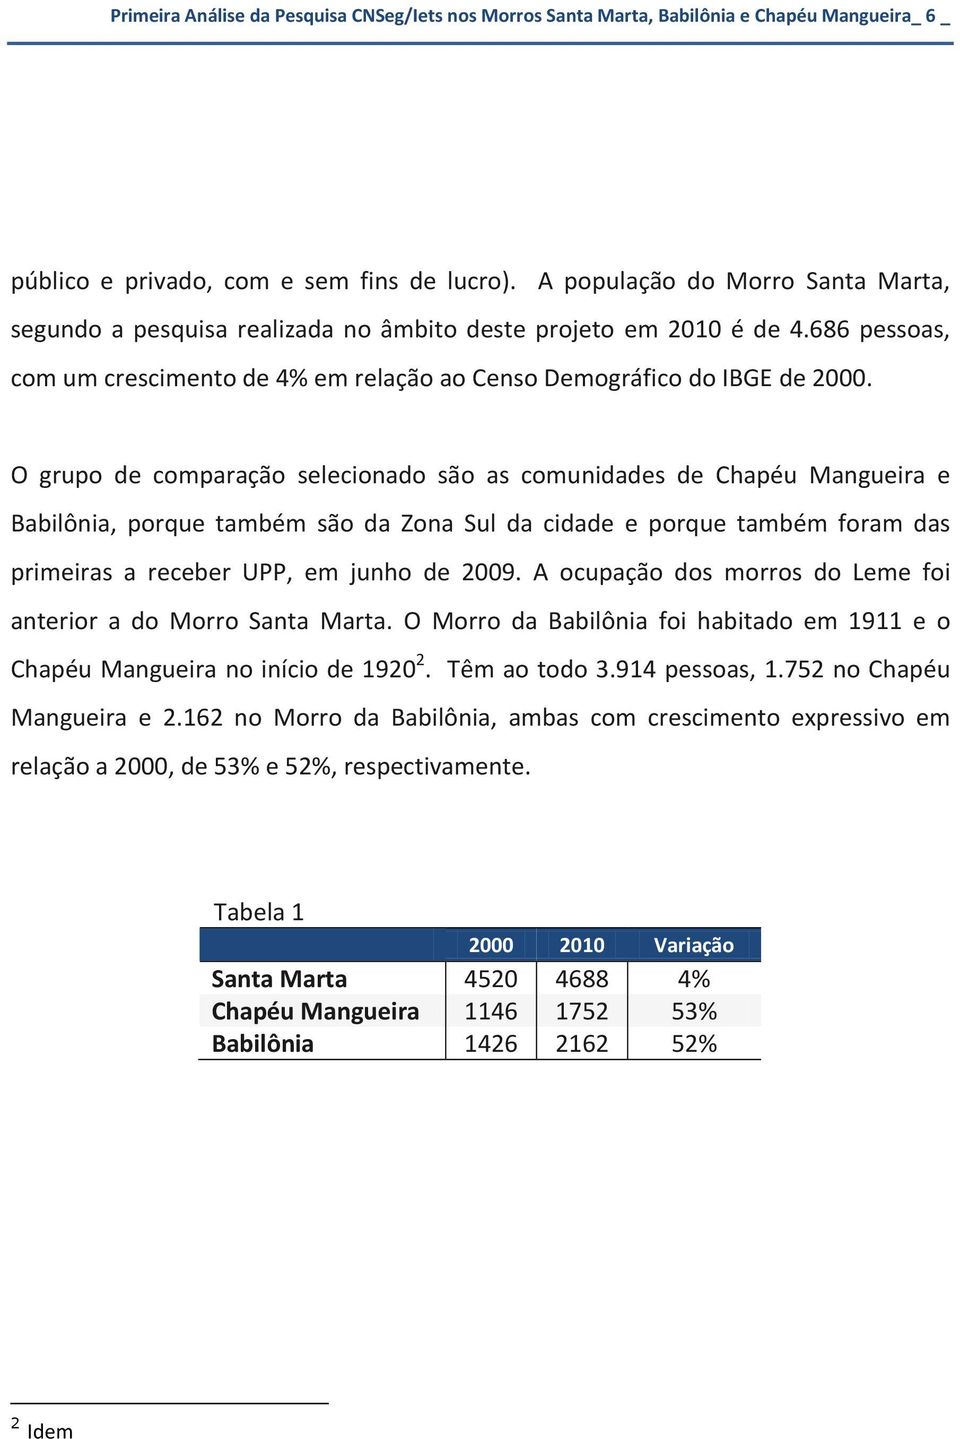 O grupo de comparação selecionado são as comunidades de Chapéu Mangueira e Babilônia, porque também são da Zona Sul da cidade e porque também foram das primeiras a receber UPP, em junho de 2009.